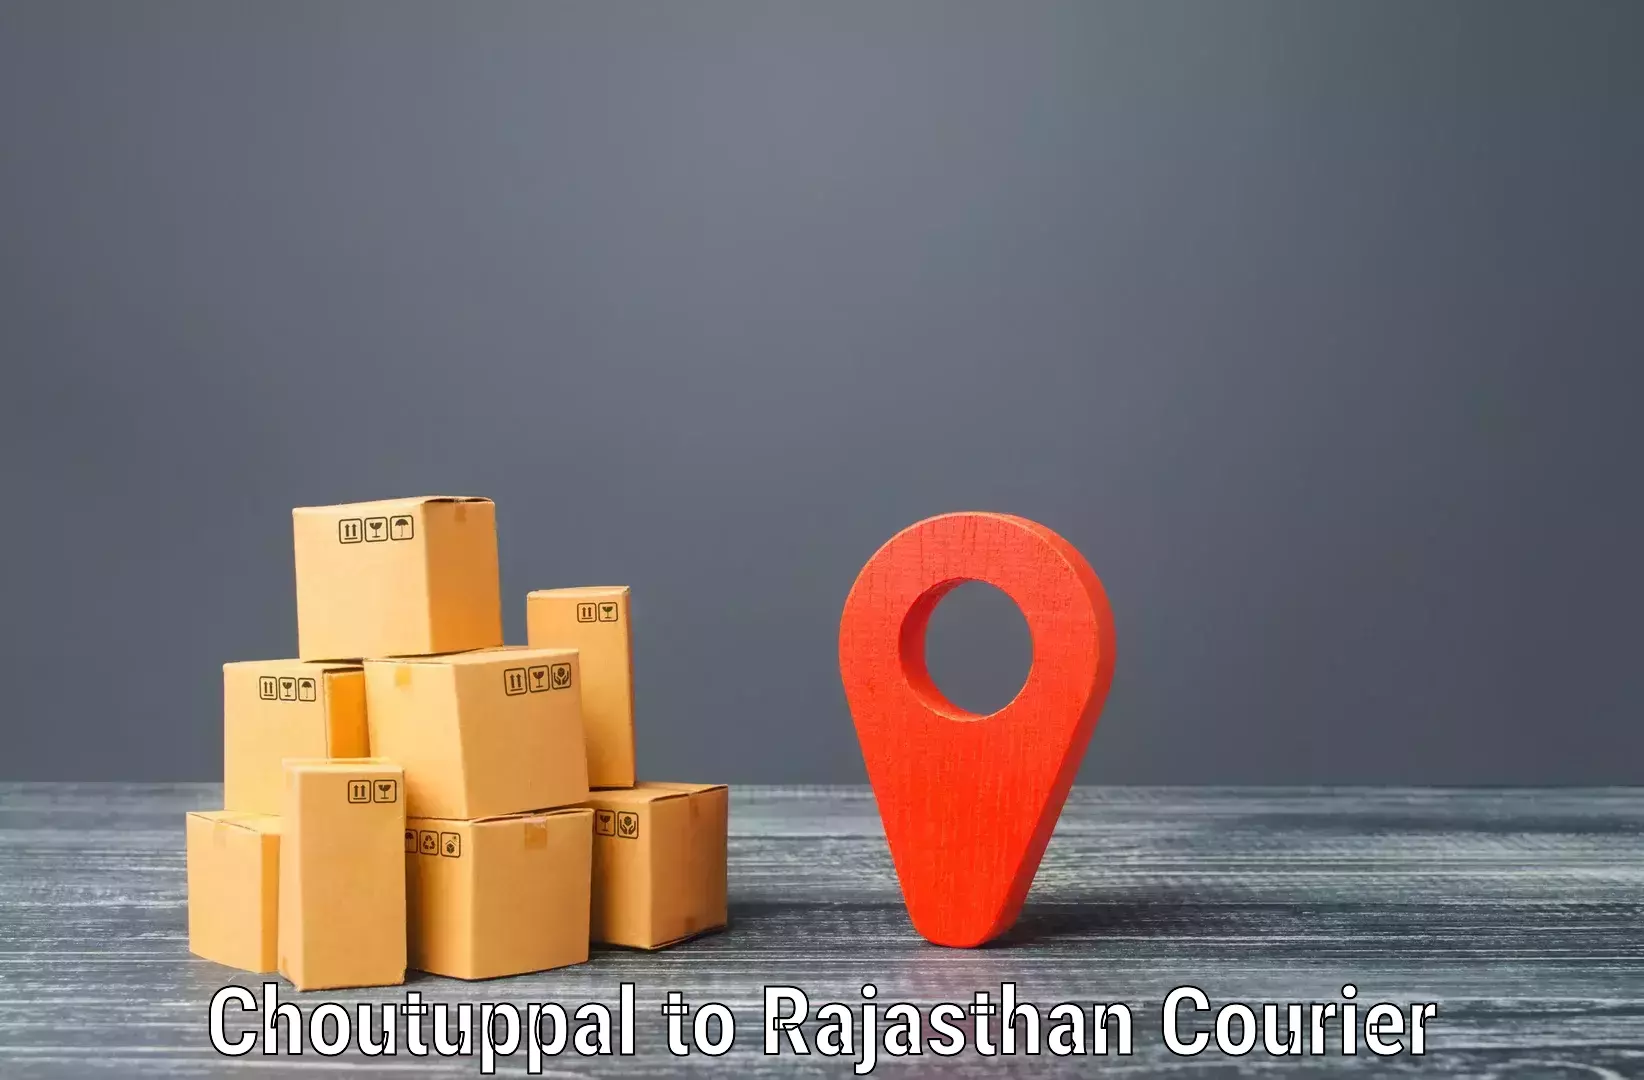 Customer-centric shipping in Choutuppal to Banar